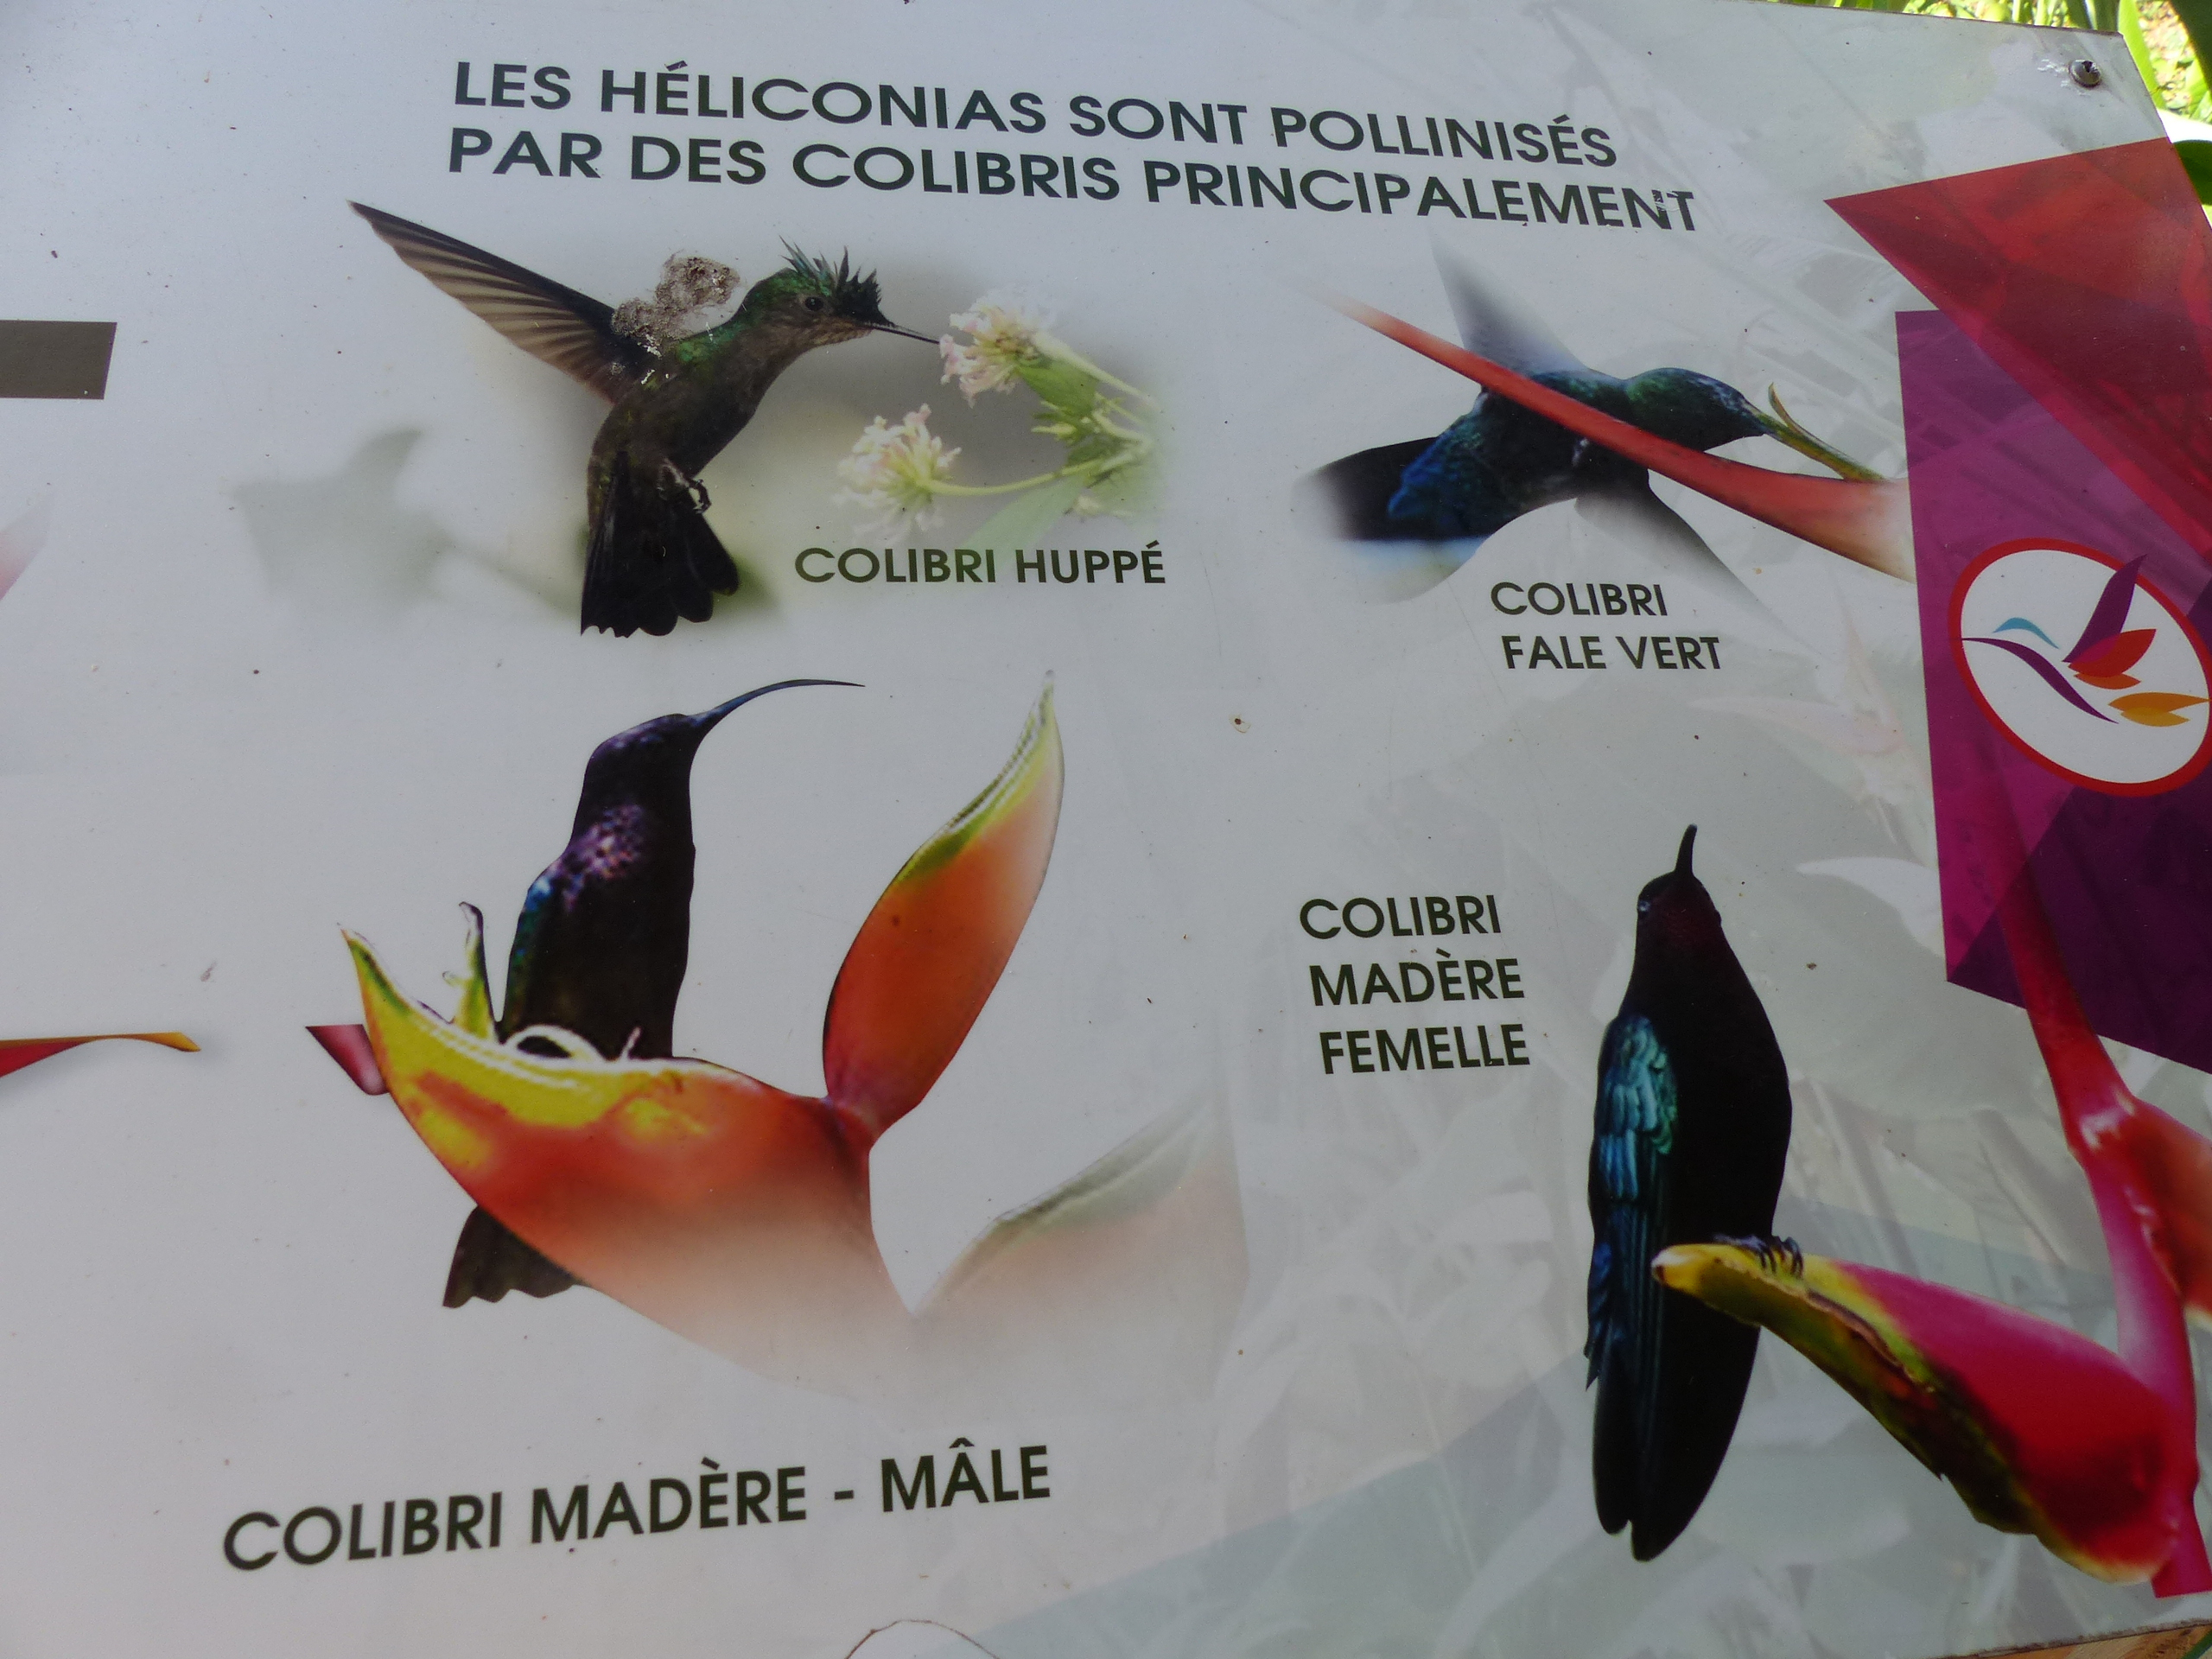 Les Principaux Colibris De Guadeloupe : Panneaux : Jardin ... destiné Jardin Des Colibris Guadeloupe